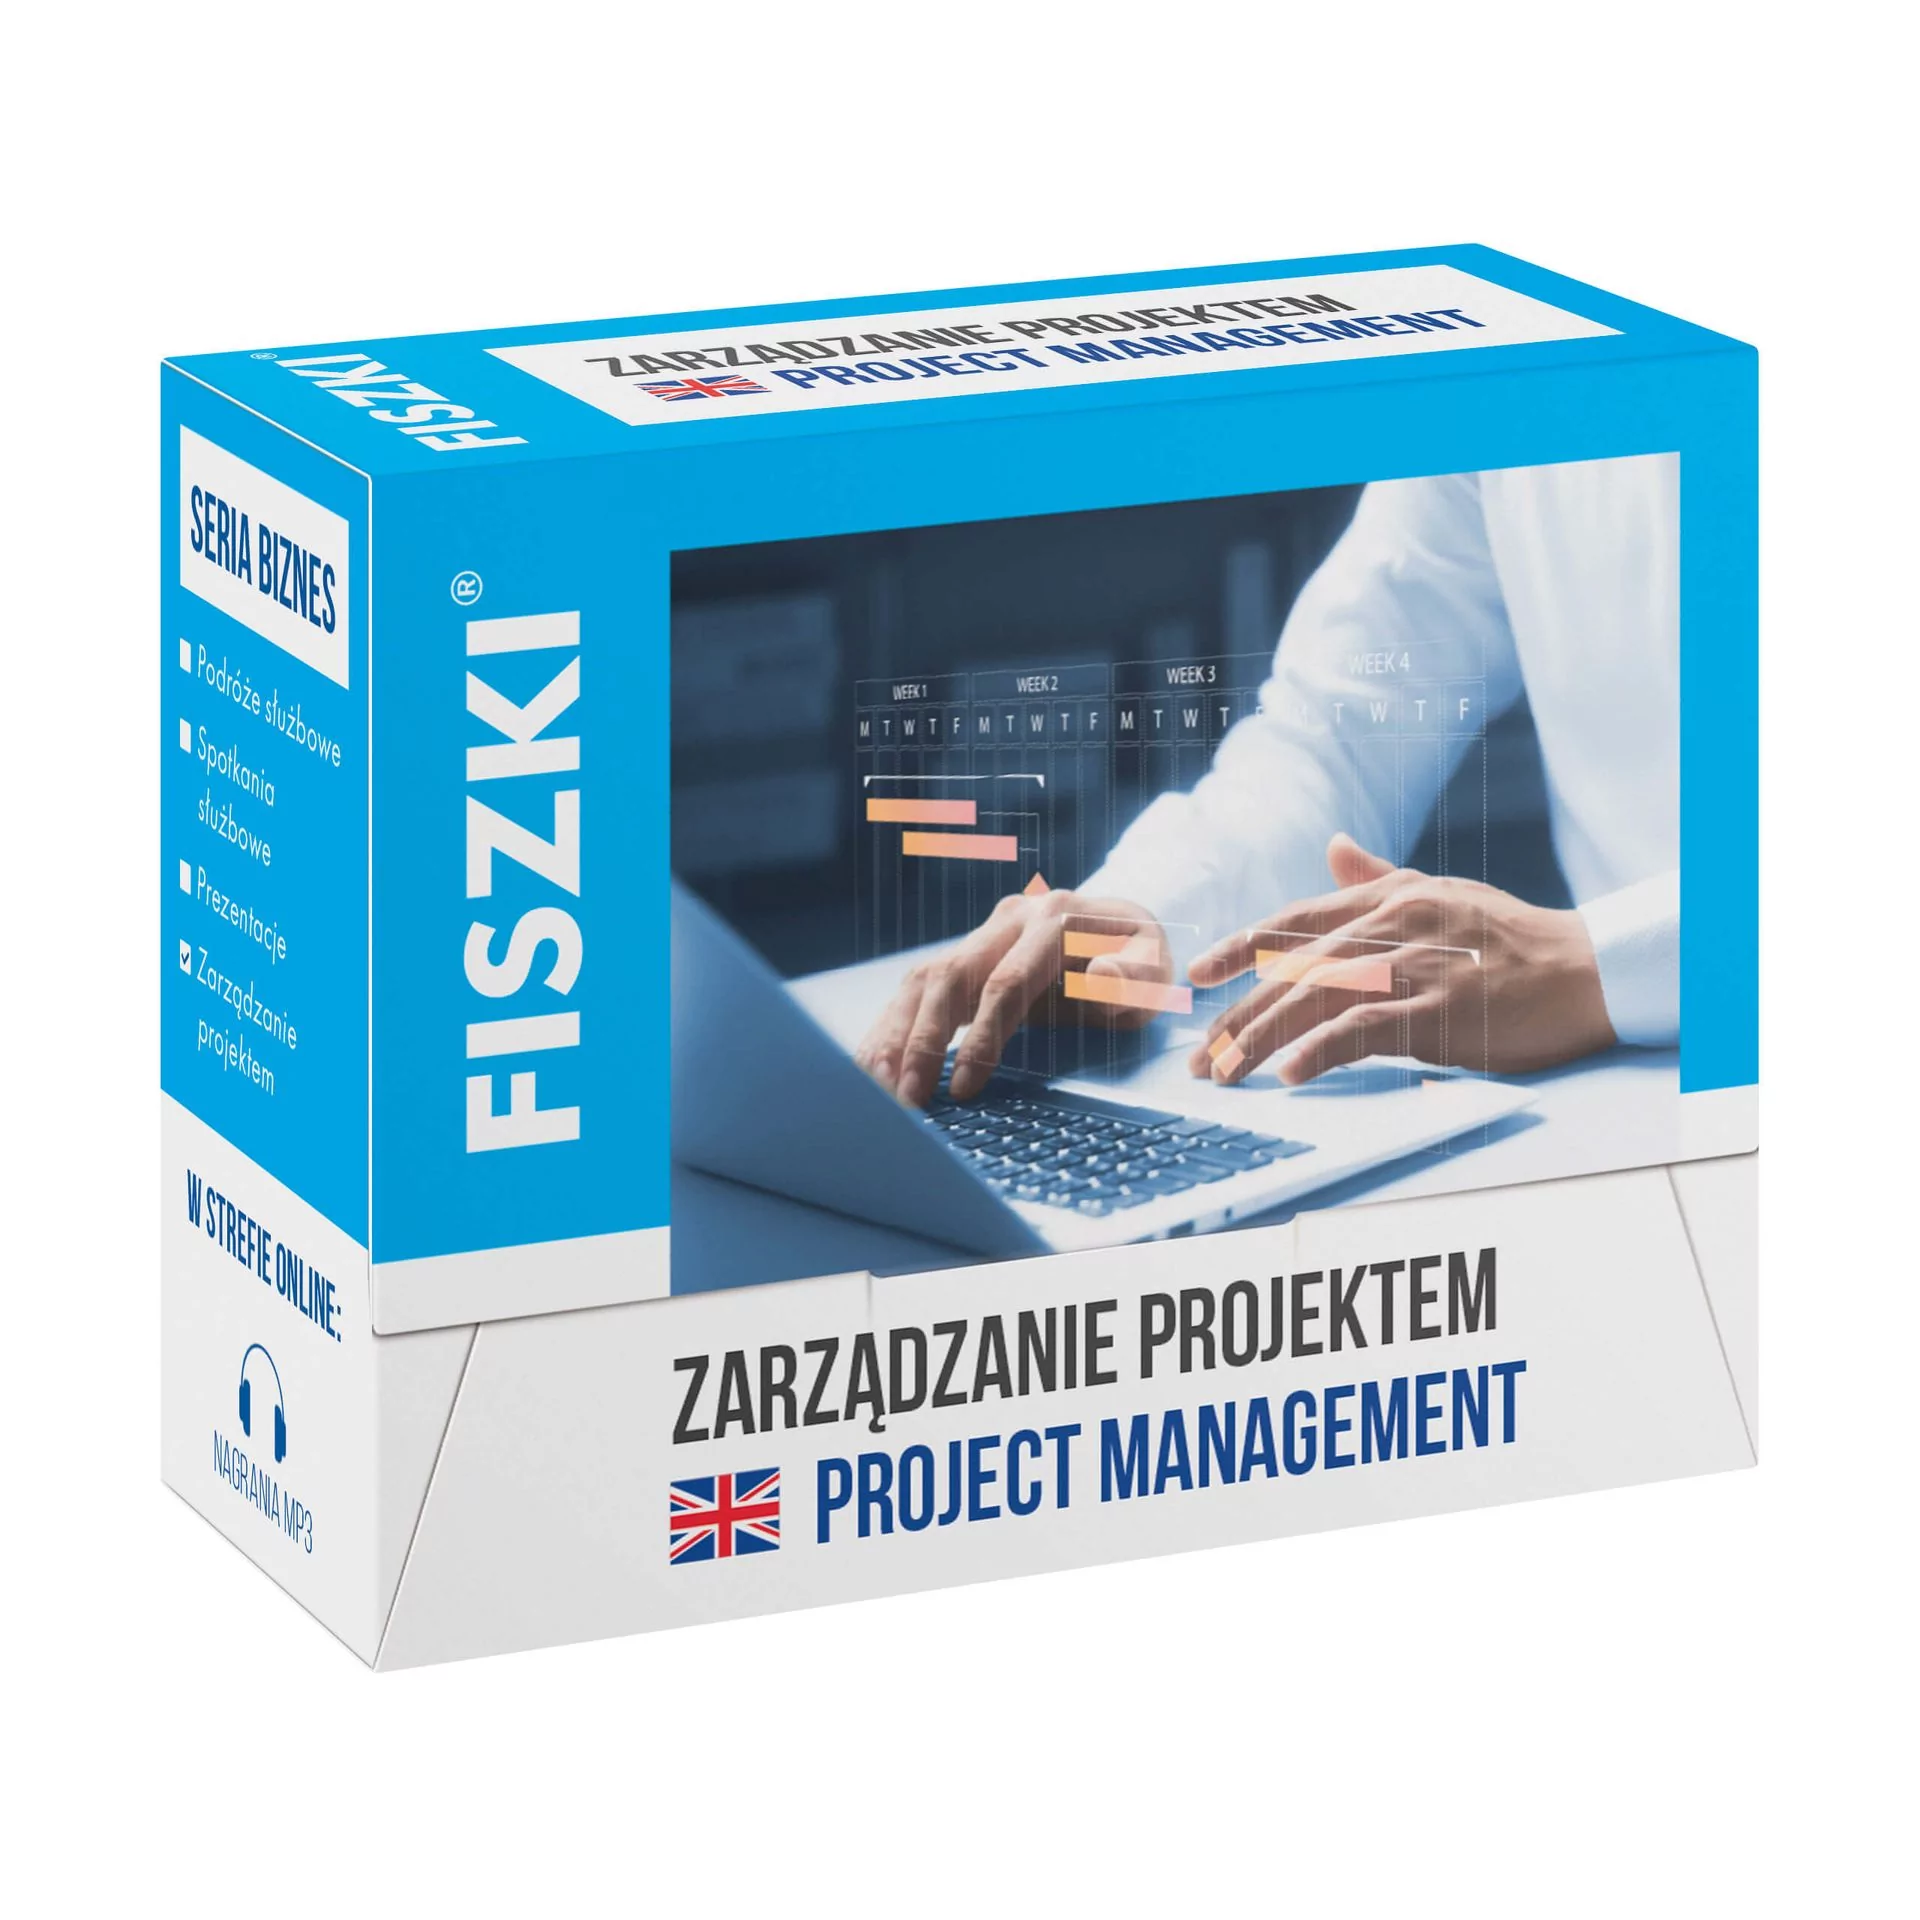 FISZKI - angielski - Zarządzanie projektem